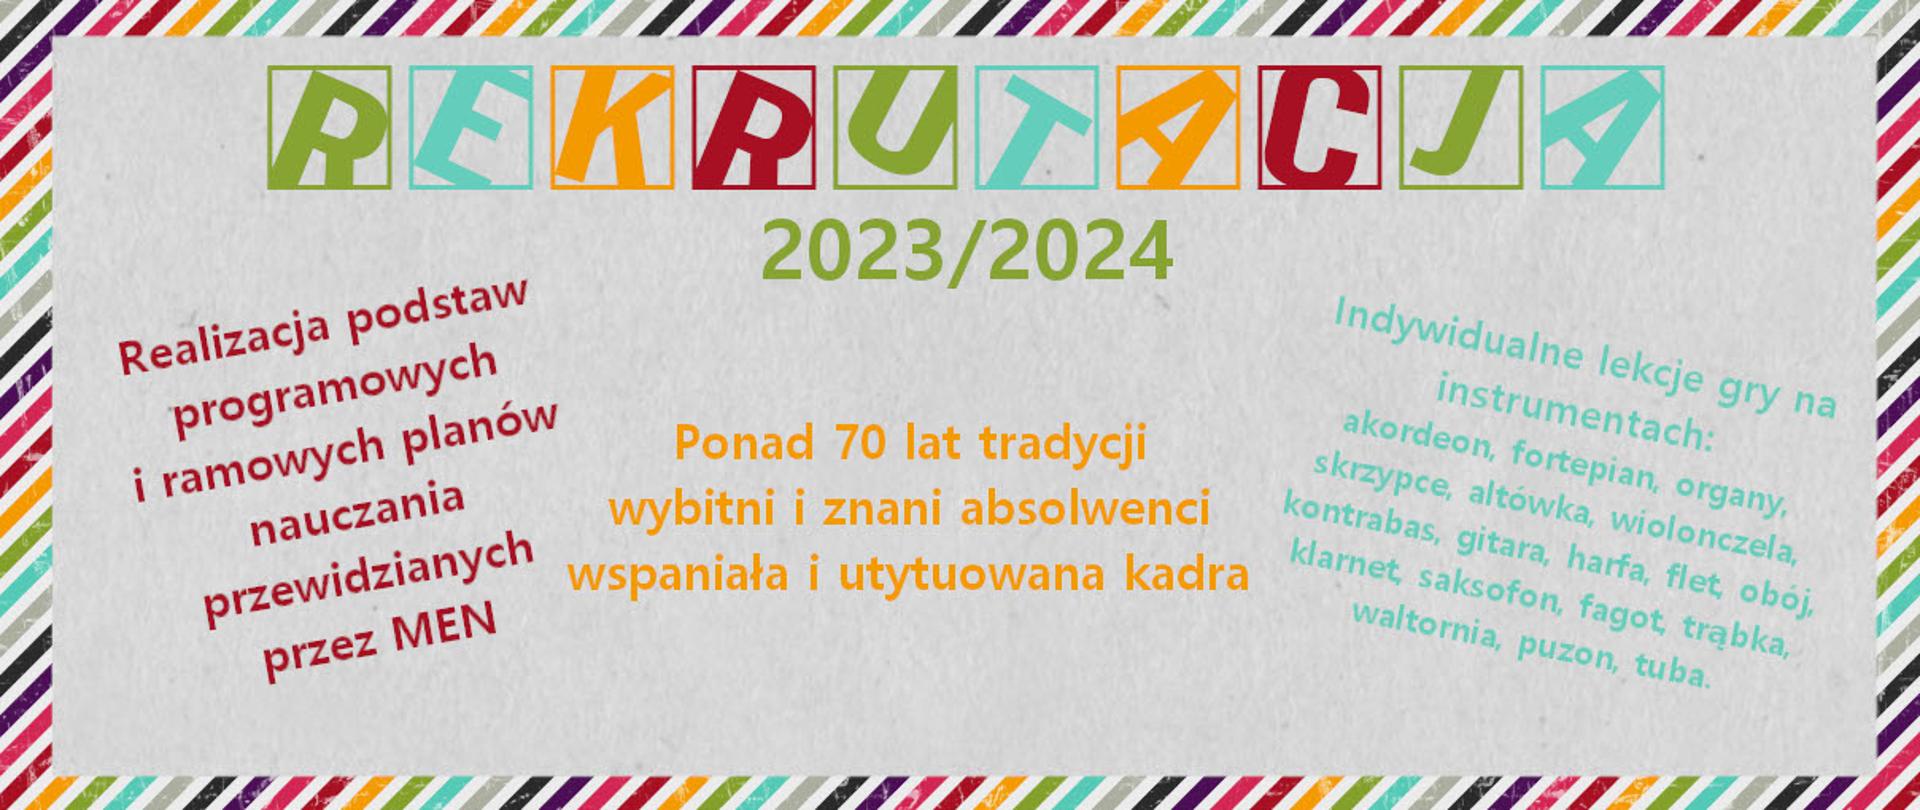 Grafika przedstawiającą na jasnym tle kolorową czcionką napis Rekrutacja 2023/2024, oraz krótkie informacje zachęcające kandydatów do szkoły. 